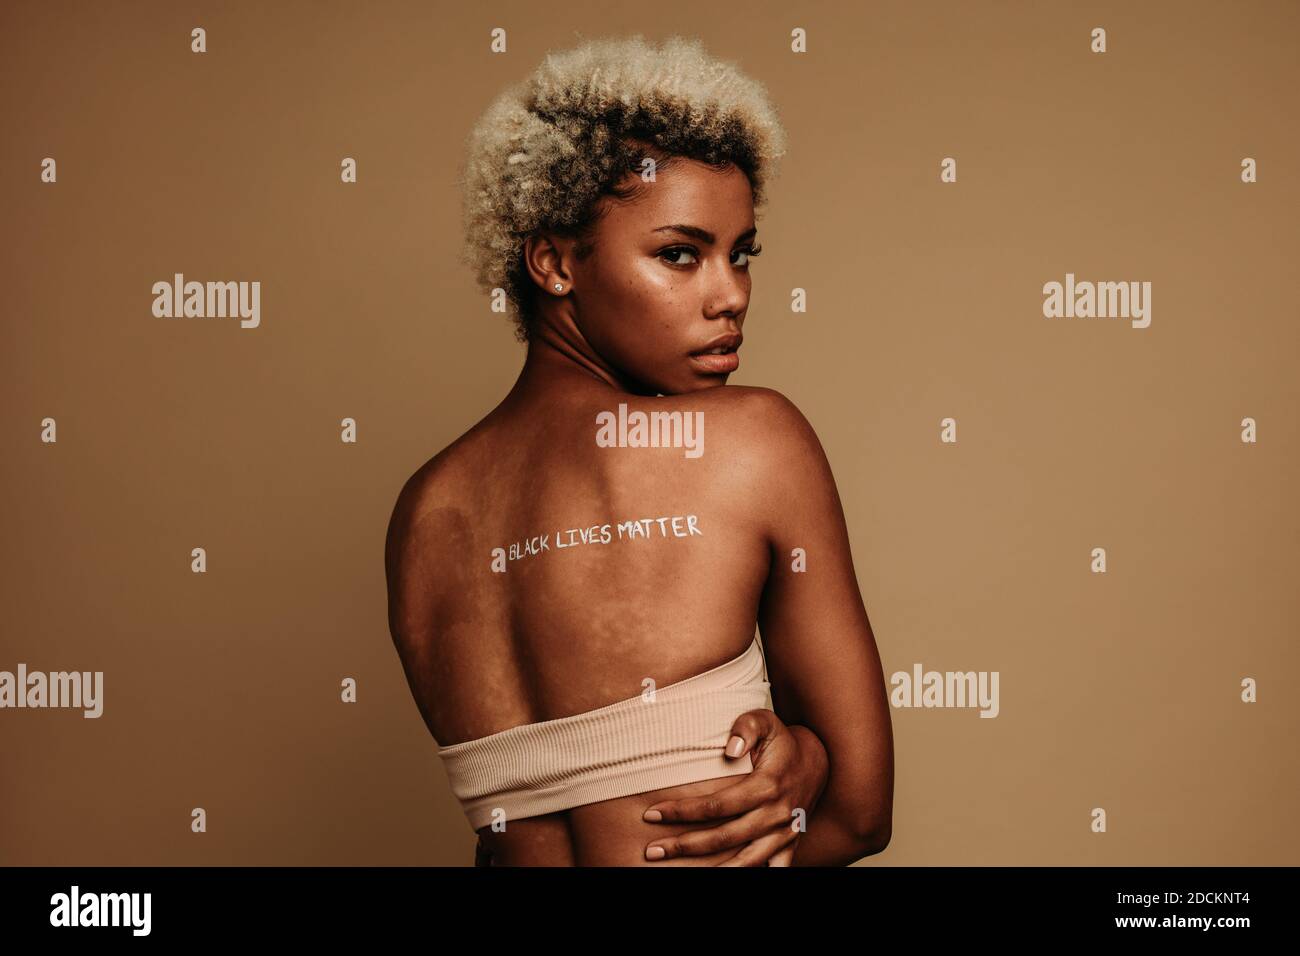 Rückansicht der Frau, die auf braunem Hintergrund steht, mit Wörtern, die schwarze Leben Materie auf Rückseite geschrieben haben. afroamerikanische Frau, die Antirassismus-Ansichten ausdrückt. Stockfoto